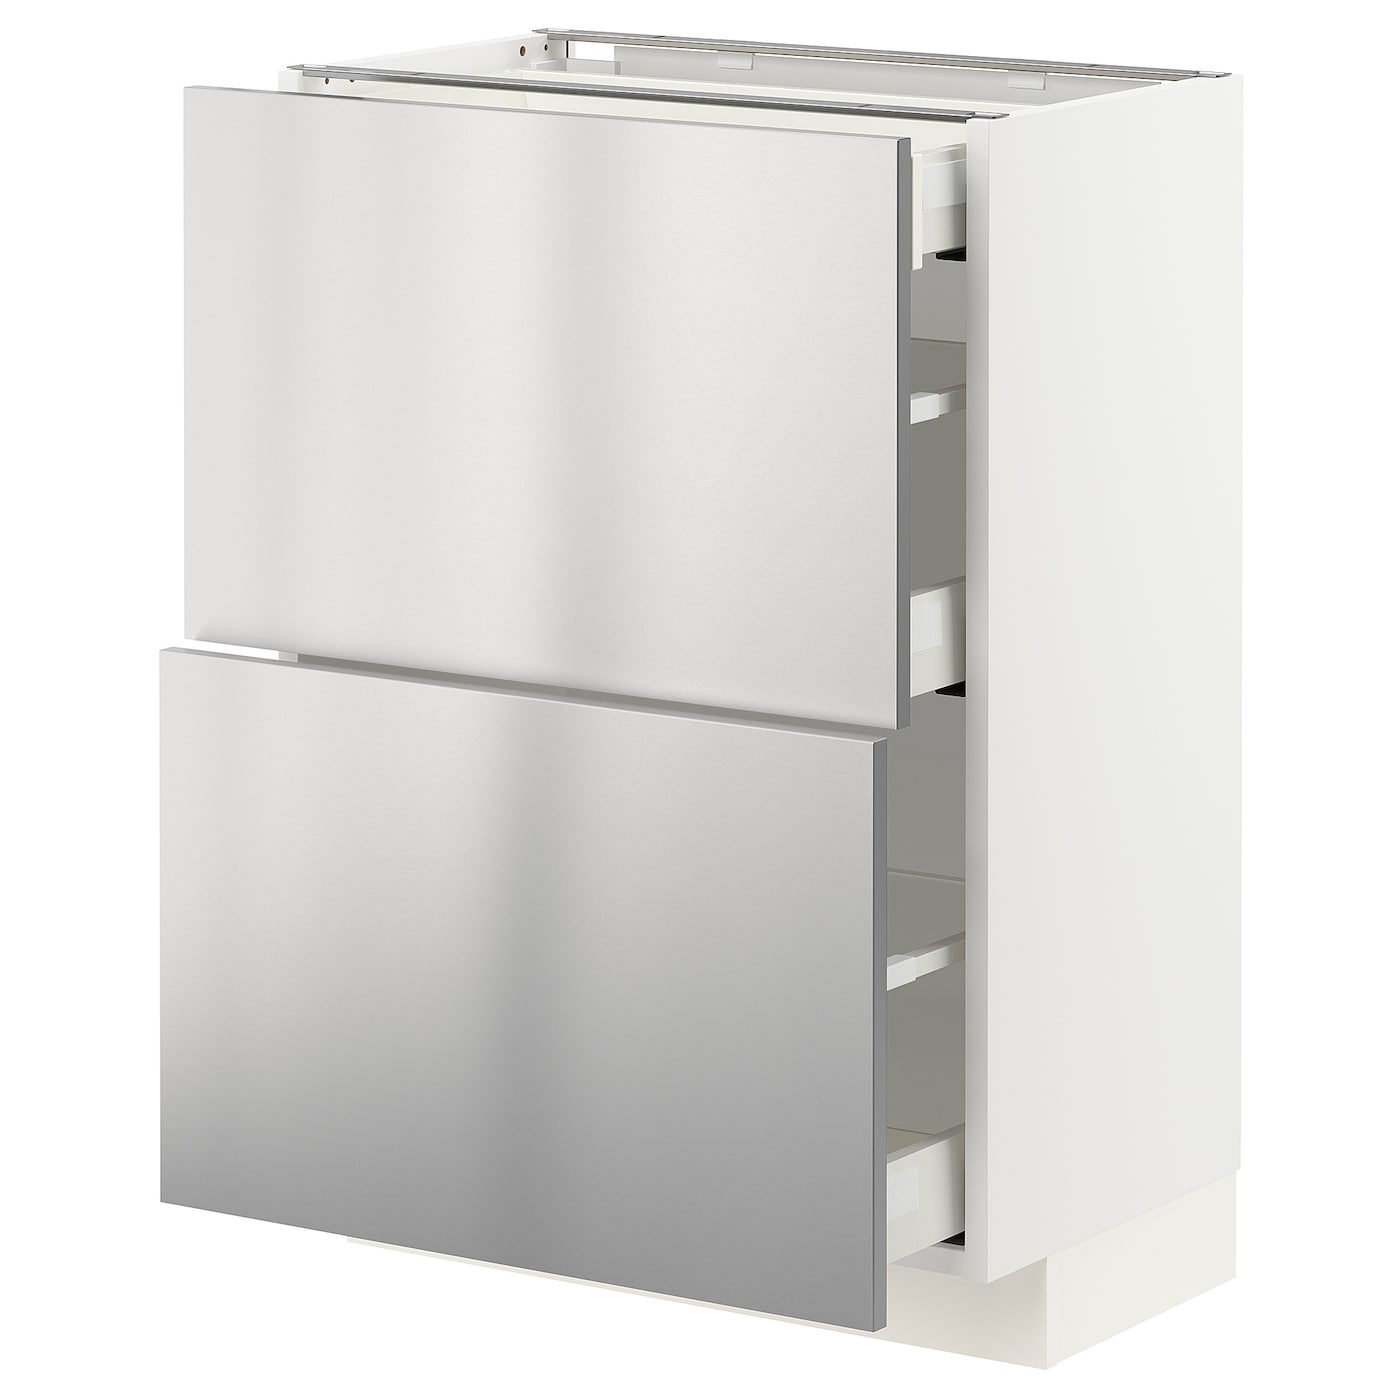 Напольный кухонный шкаф  - IKEA METOD MAXIMERA, 80x39,2x60см, белый/светло-серый, МЕТОД МАКСИМЕРА ИКЕА